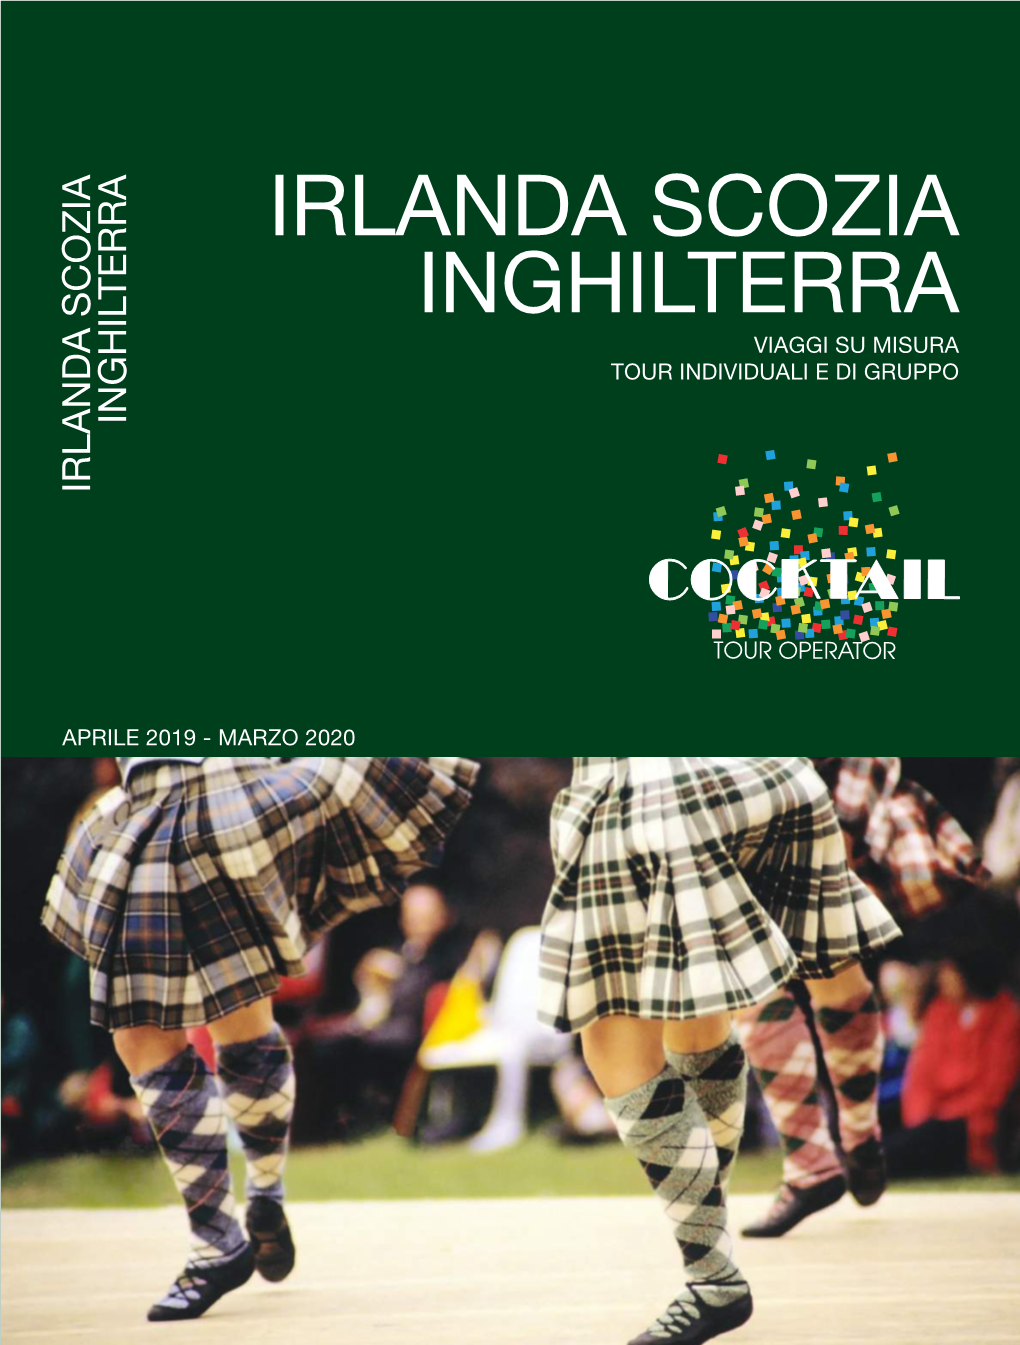 Irlanda Scozia Inghilterra Viaggi Su Misura Tour Individuali E Di Gruppo Inghilterra Irlanda Scozia